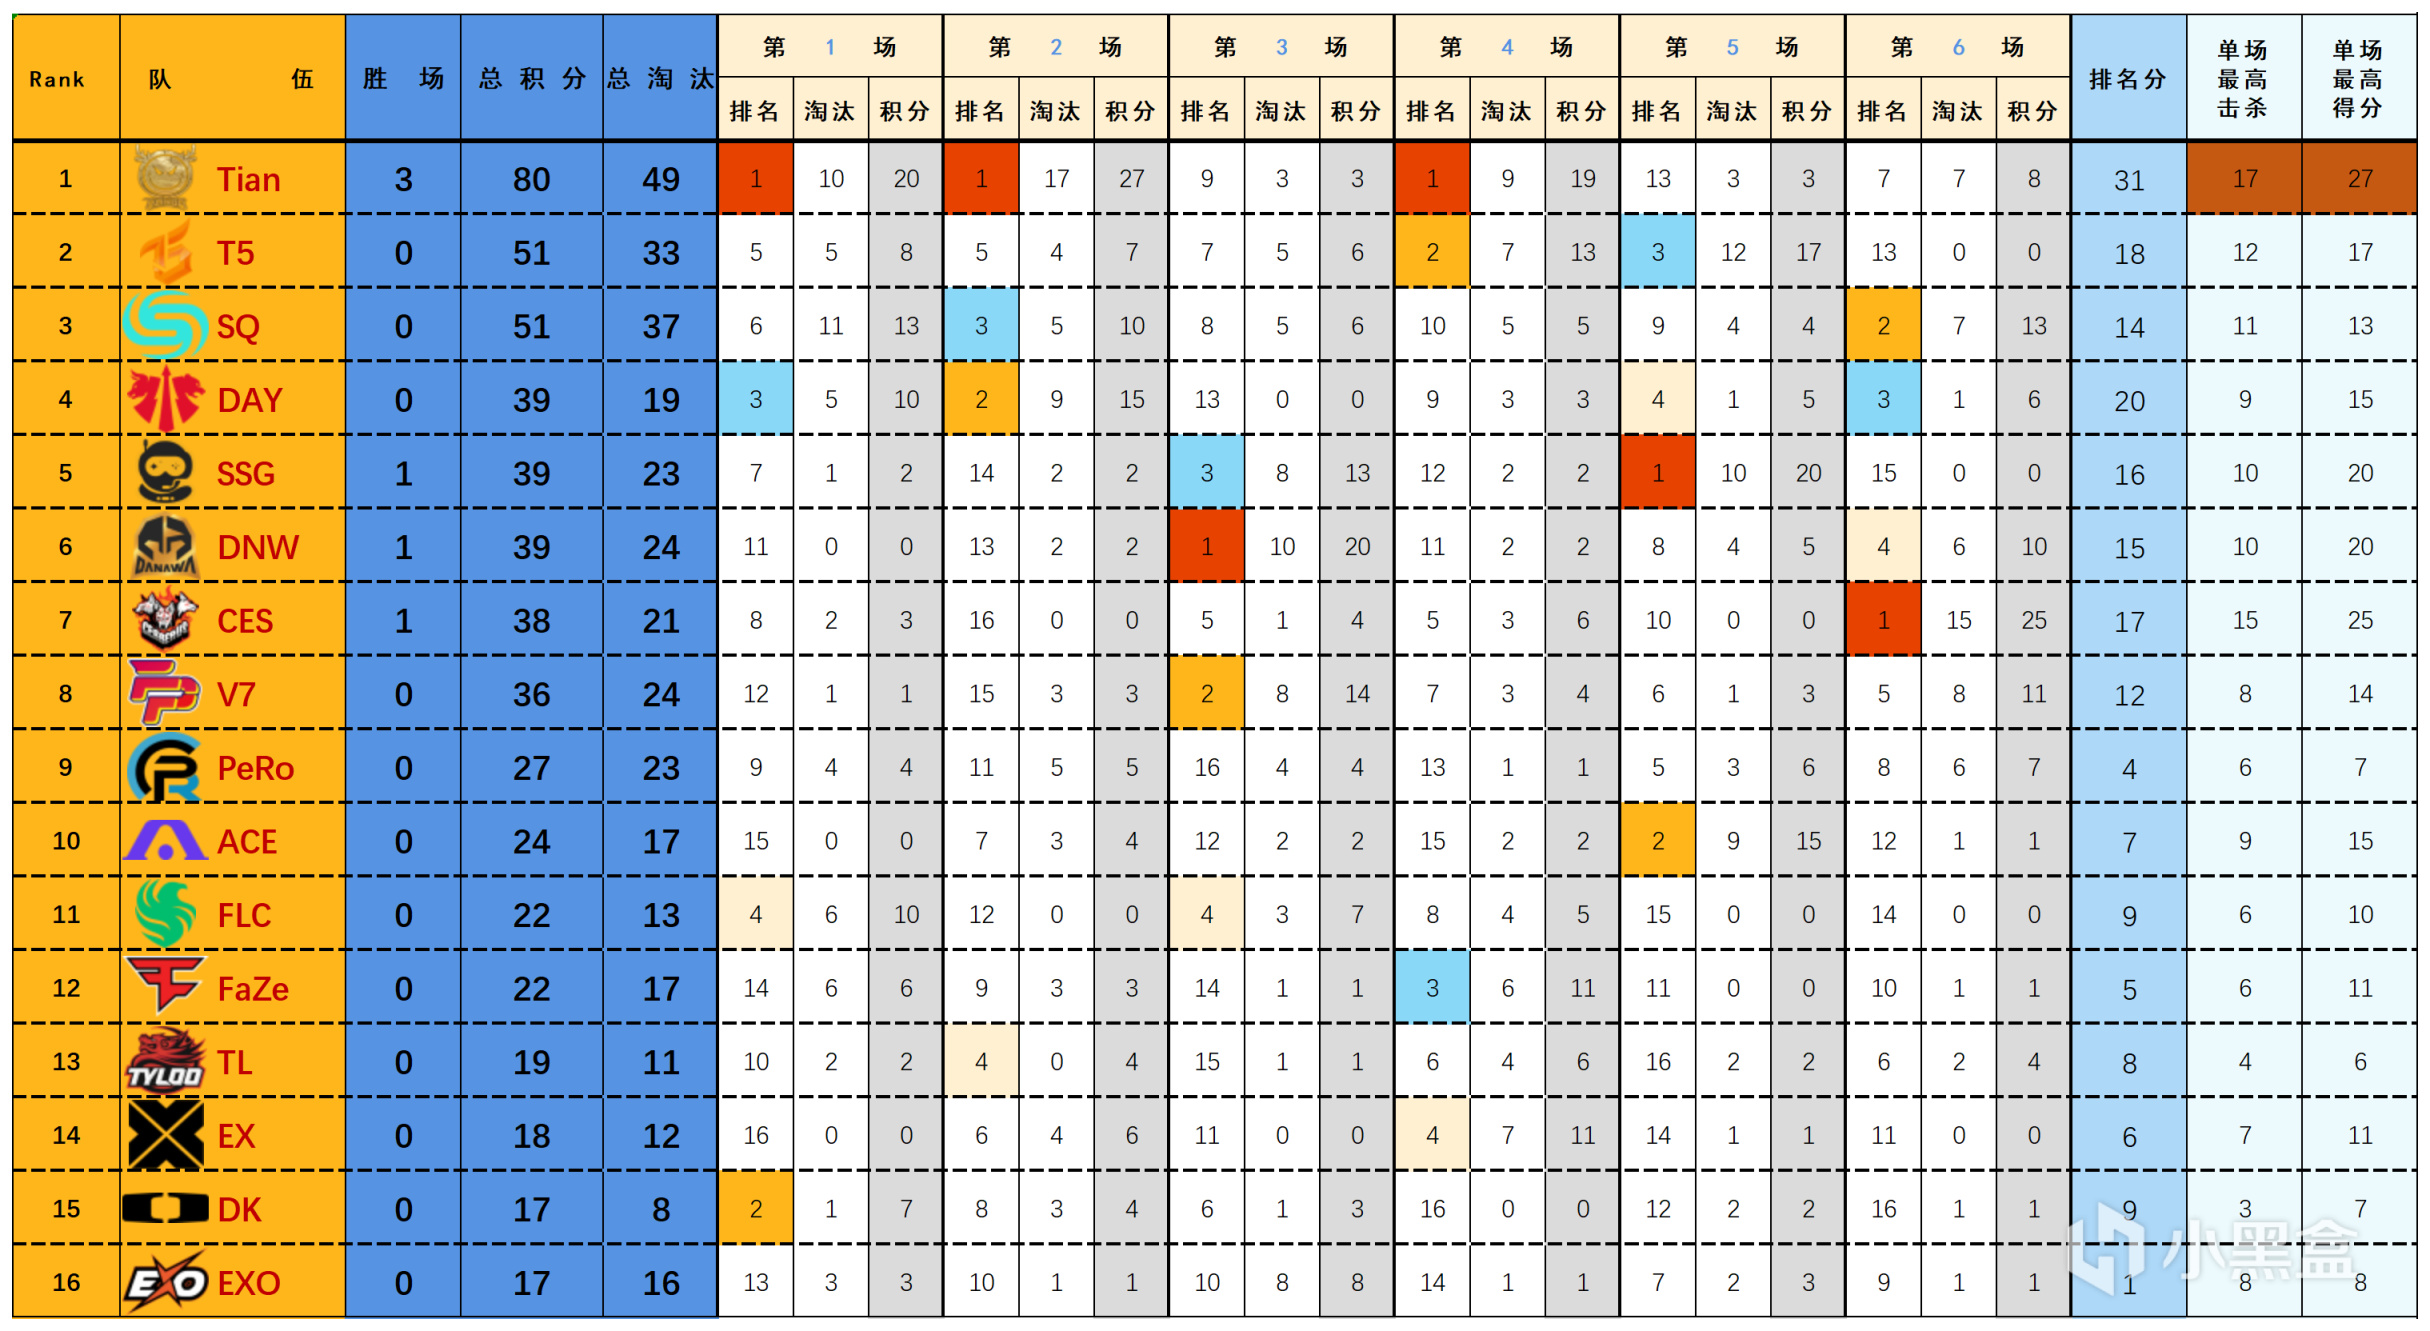 【數據流】23PGC-A組D1,天霸80分暫列榜首,T5_Thanad0l戰神16淘汰-第1張